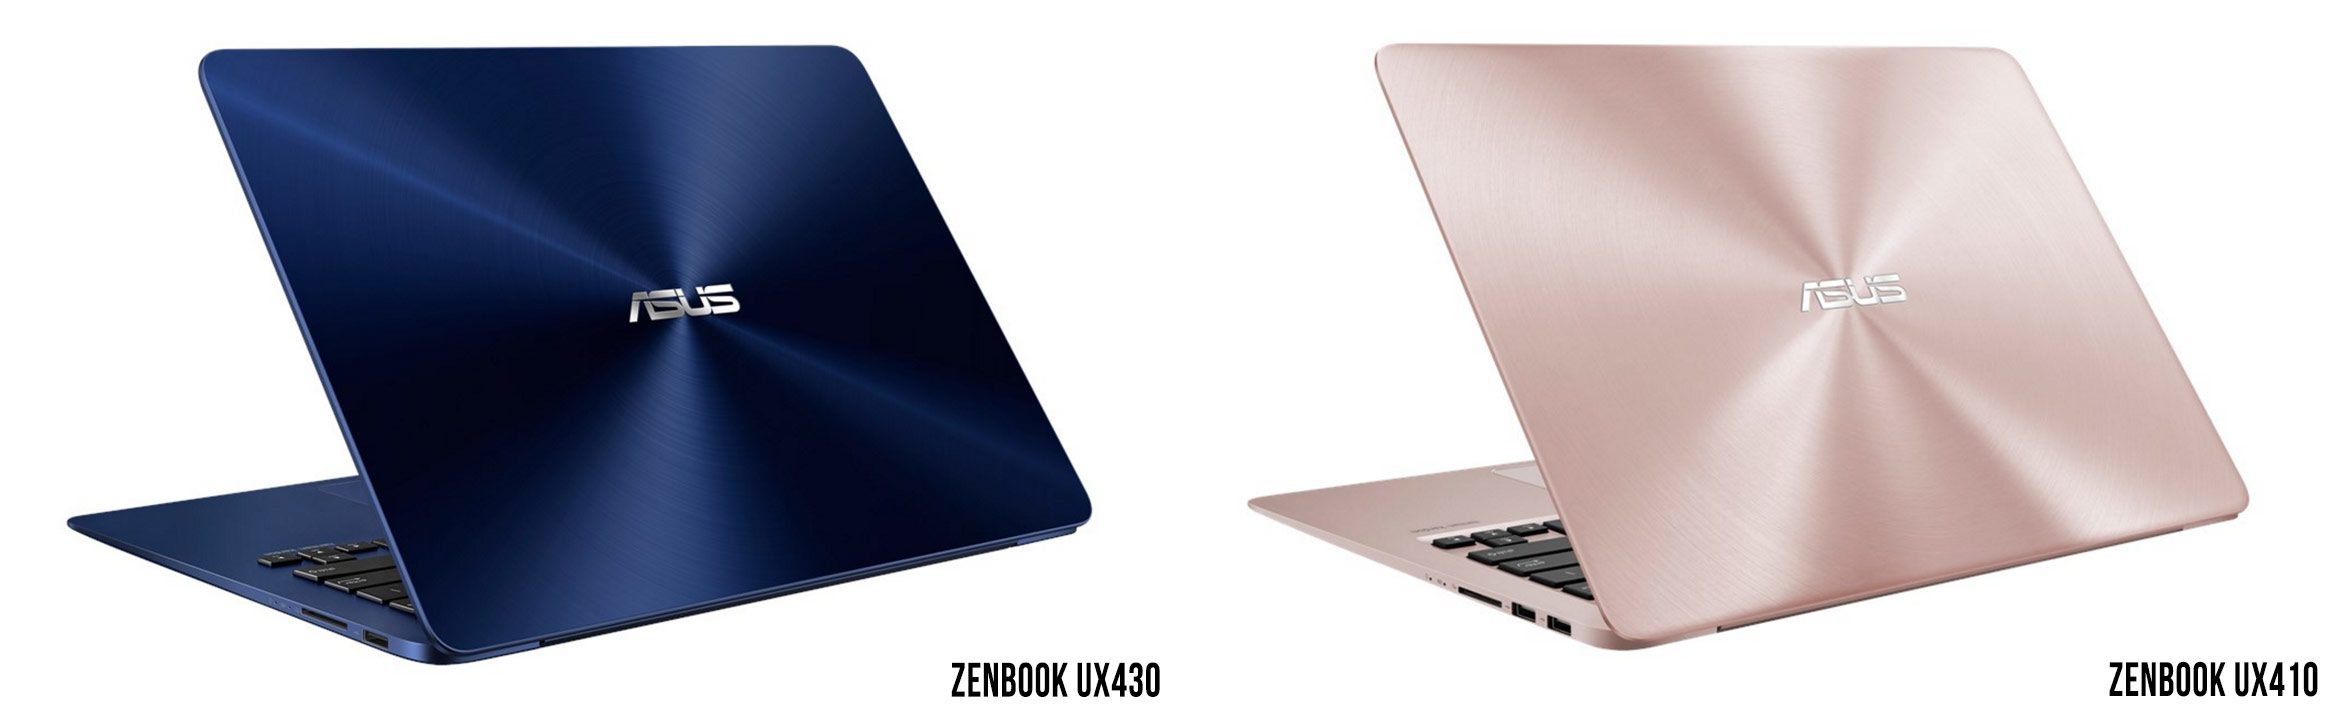 zenbook ux430 ux410 designs